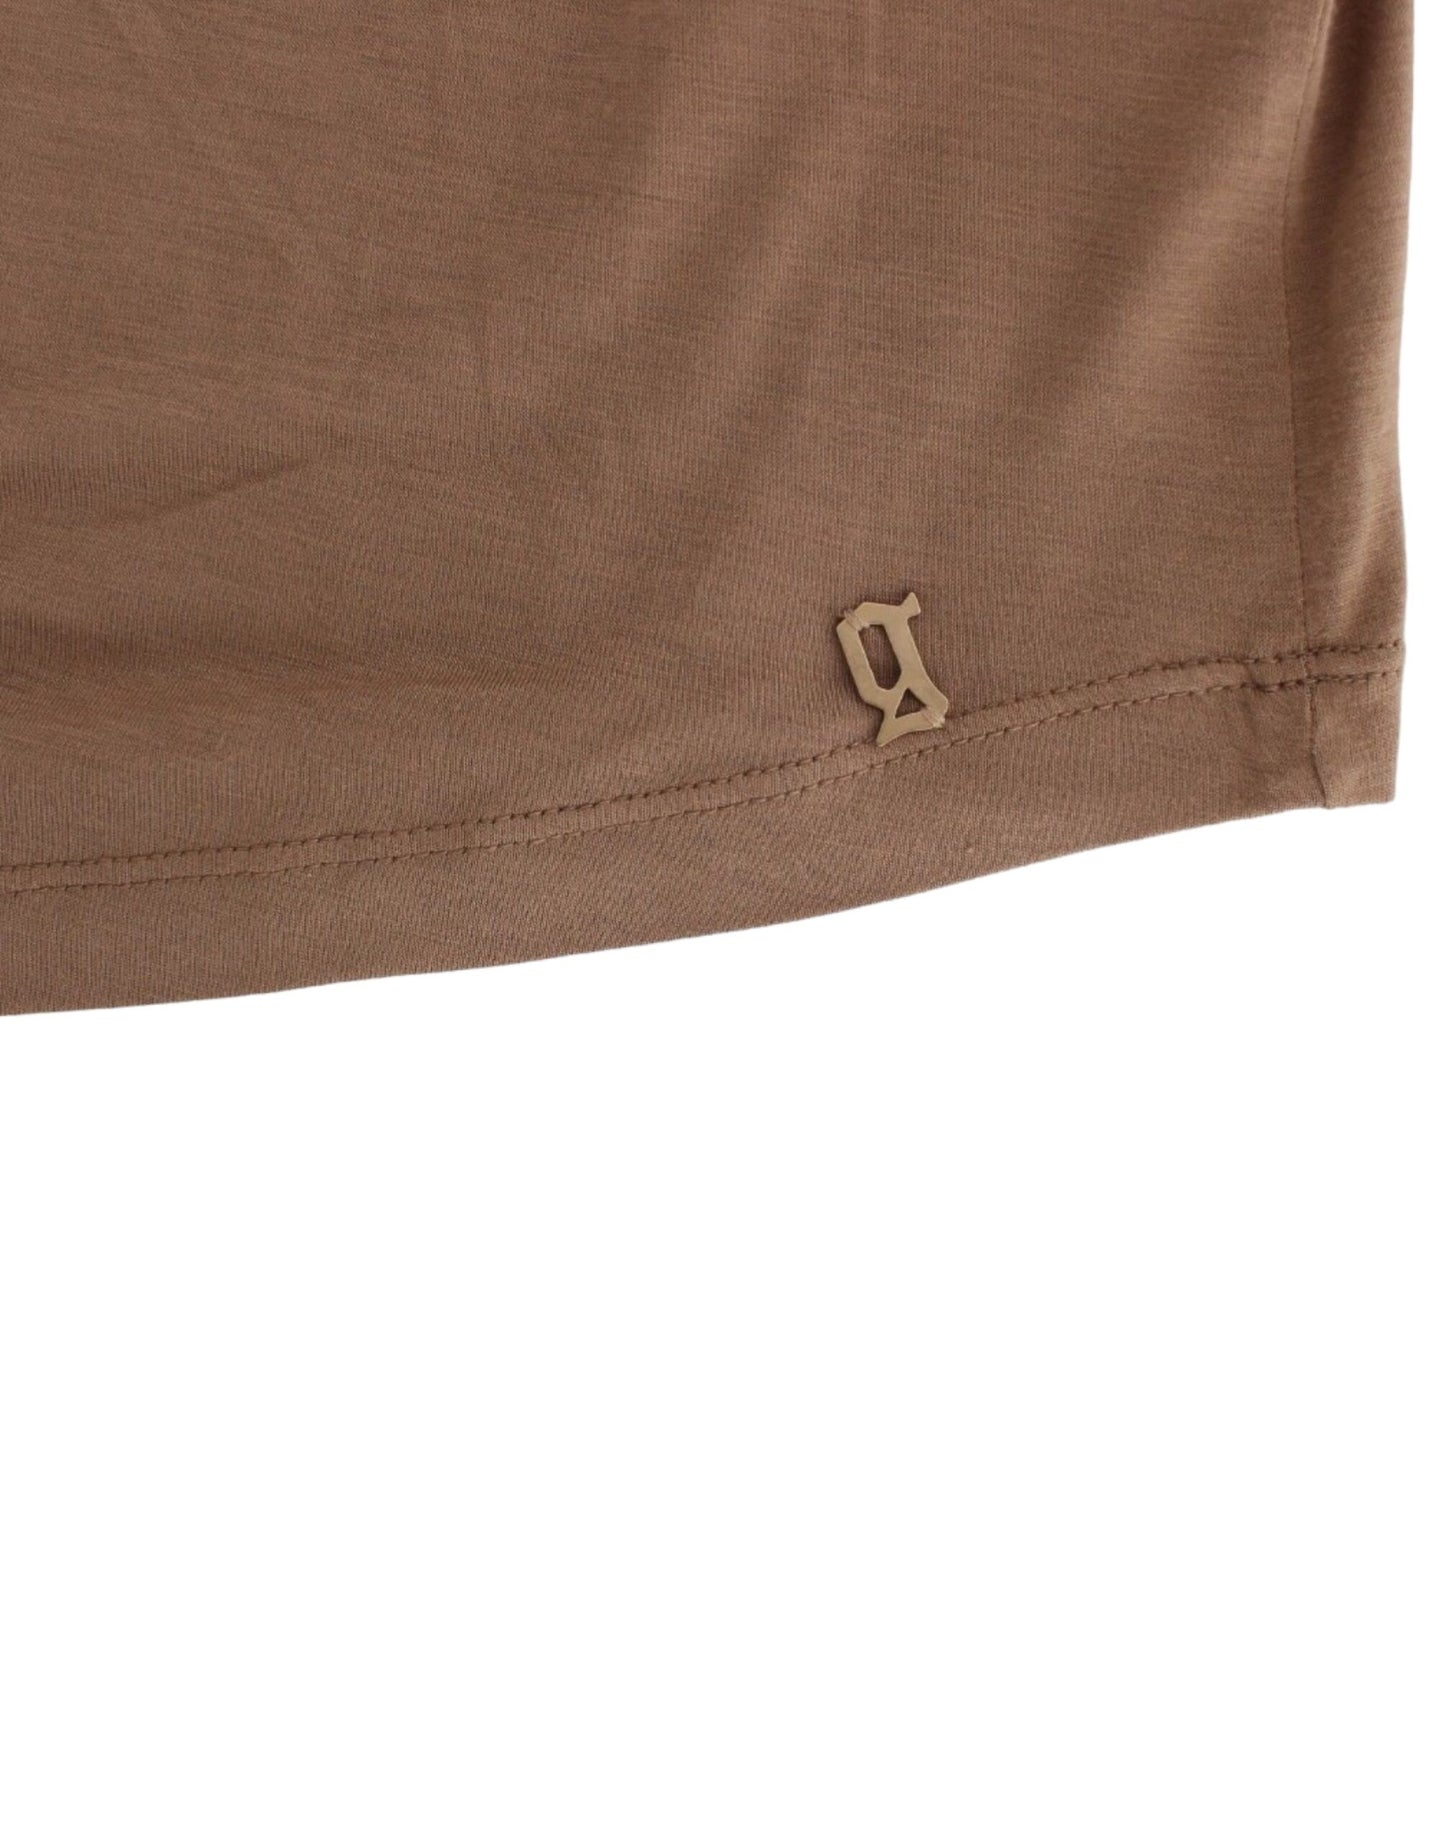 Elegant Short-Sleeved Brown Rayon Top